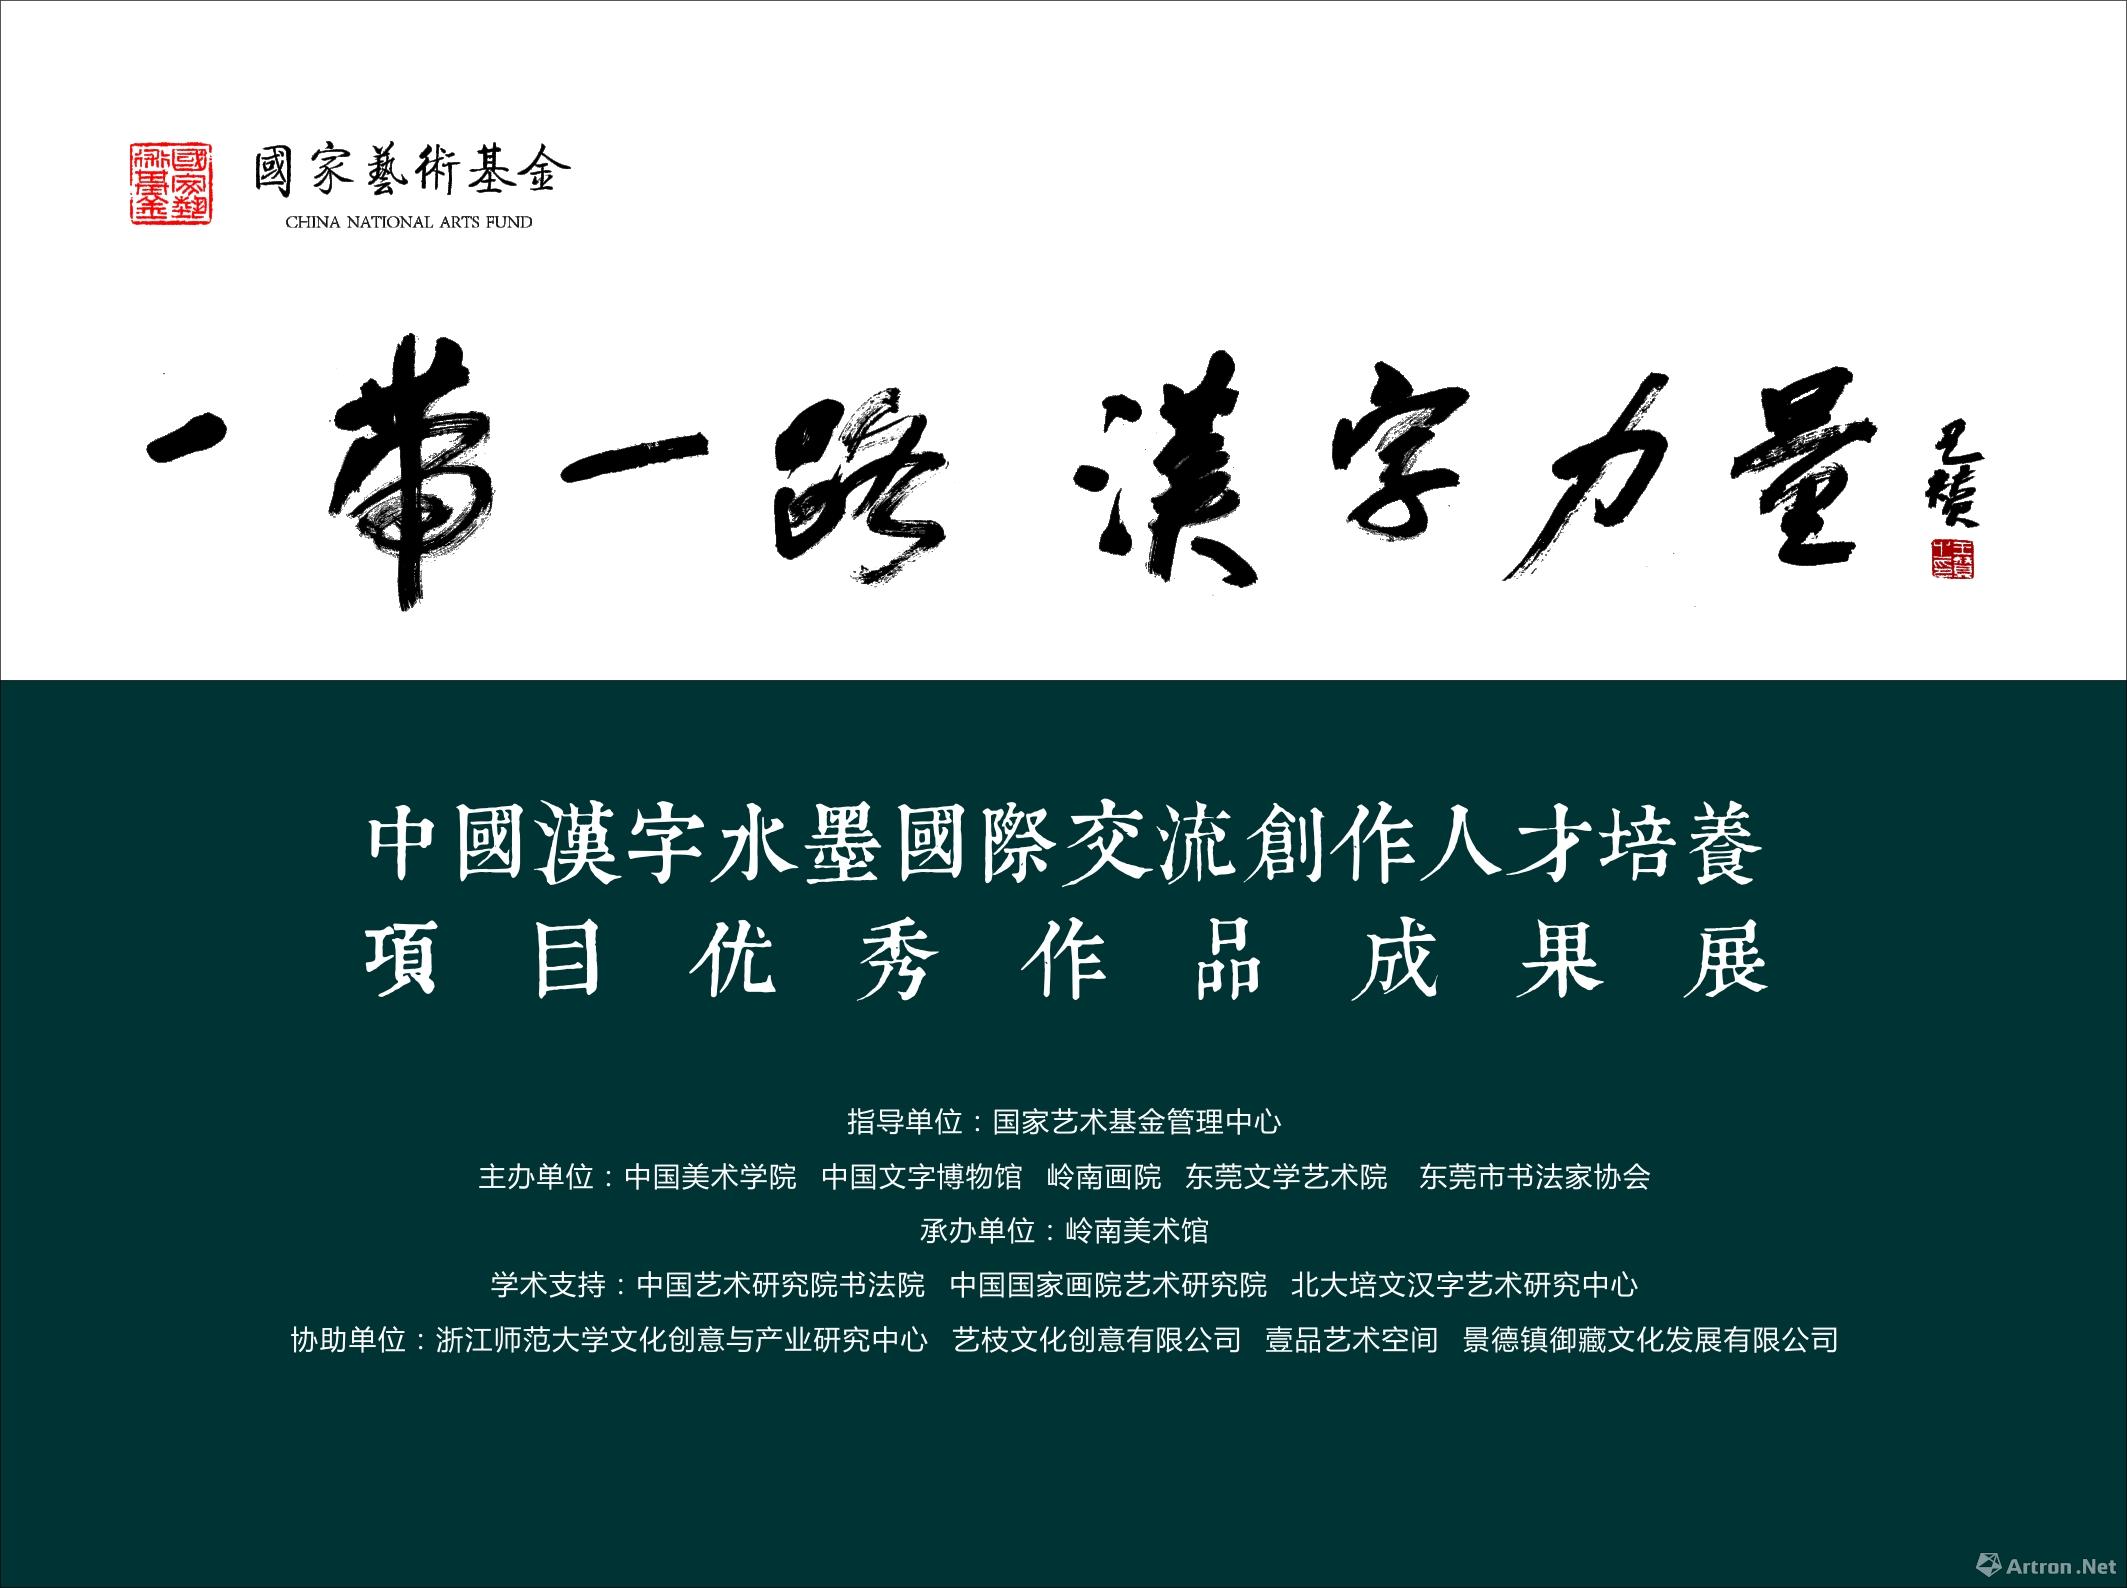 “‘一带一路’汉字力量·中国汉字水墨国际交流创作人才培养项目”优秀作品成果展